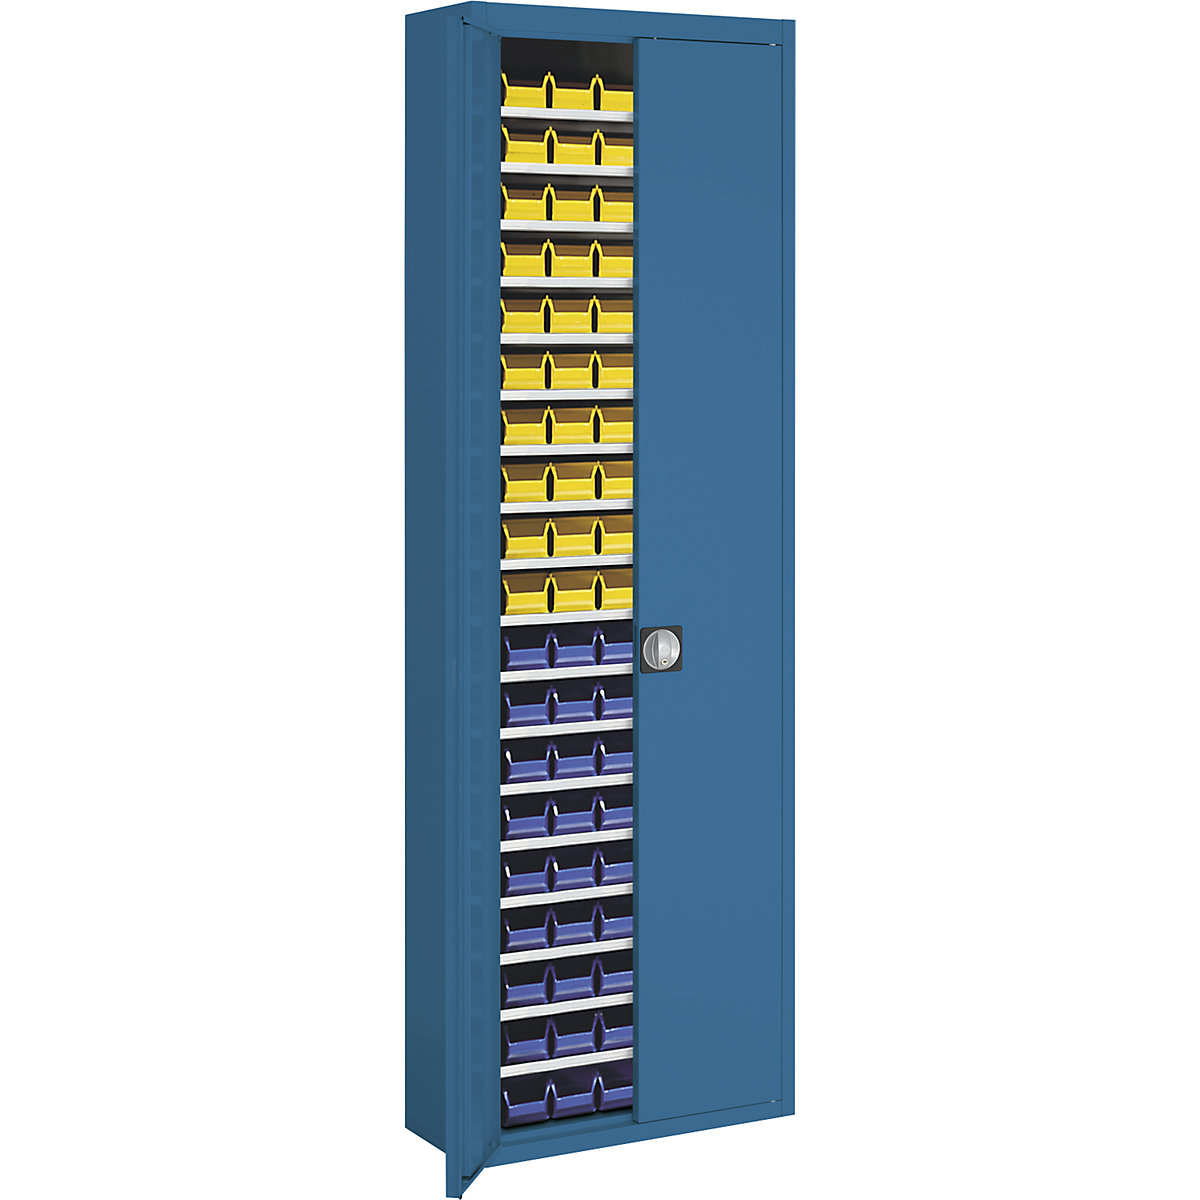 Skladišni ormar s otvorenim skladišnim kutijama – mauser, VxŠxD 2150 x 680 x 280 mm, u dvije boje, korpus u sivoj boji, vrata u plavoj boji, 114 kutija-5